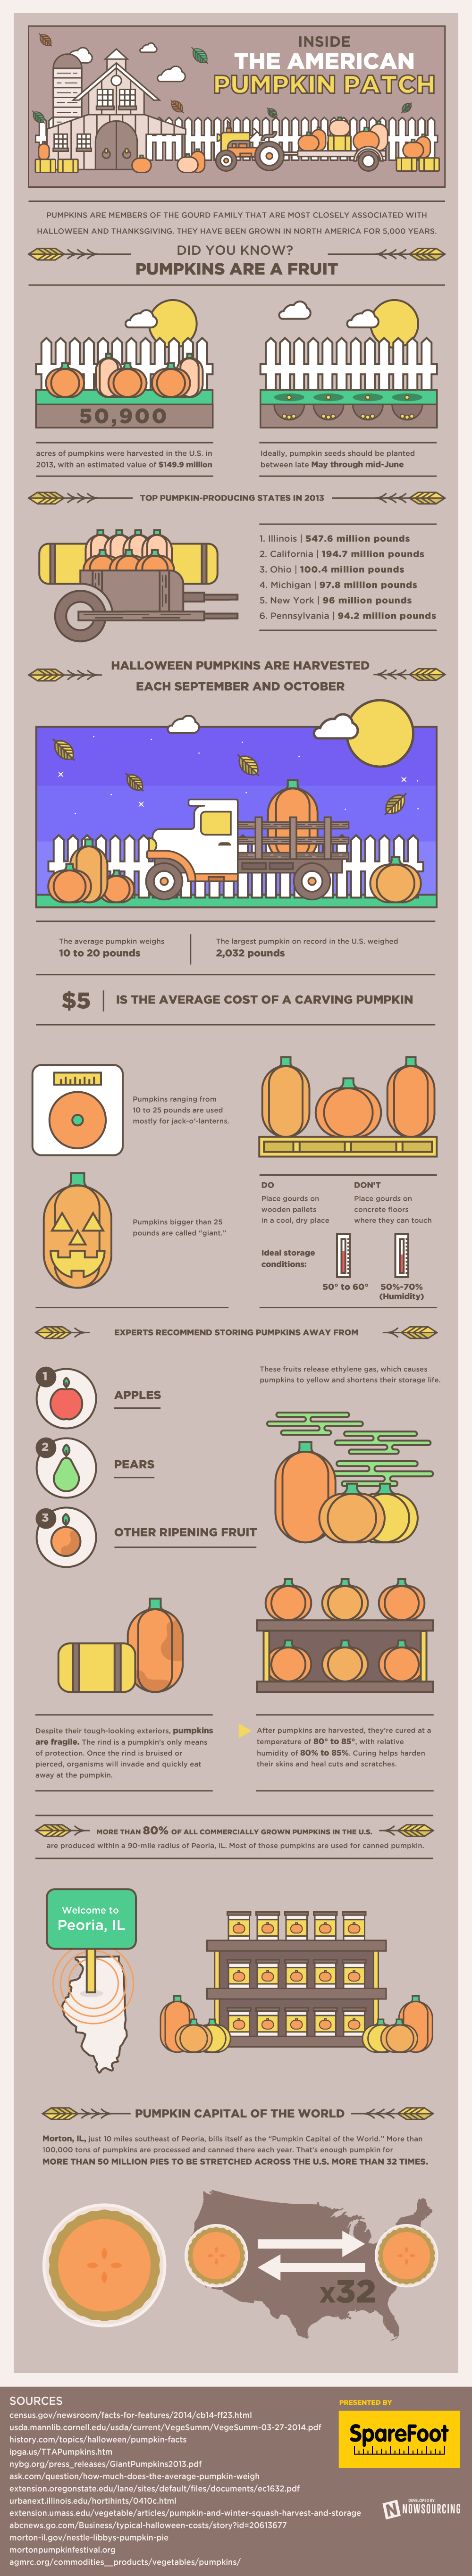 pumpkins1 (1)